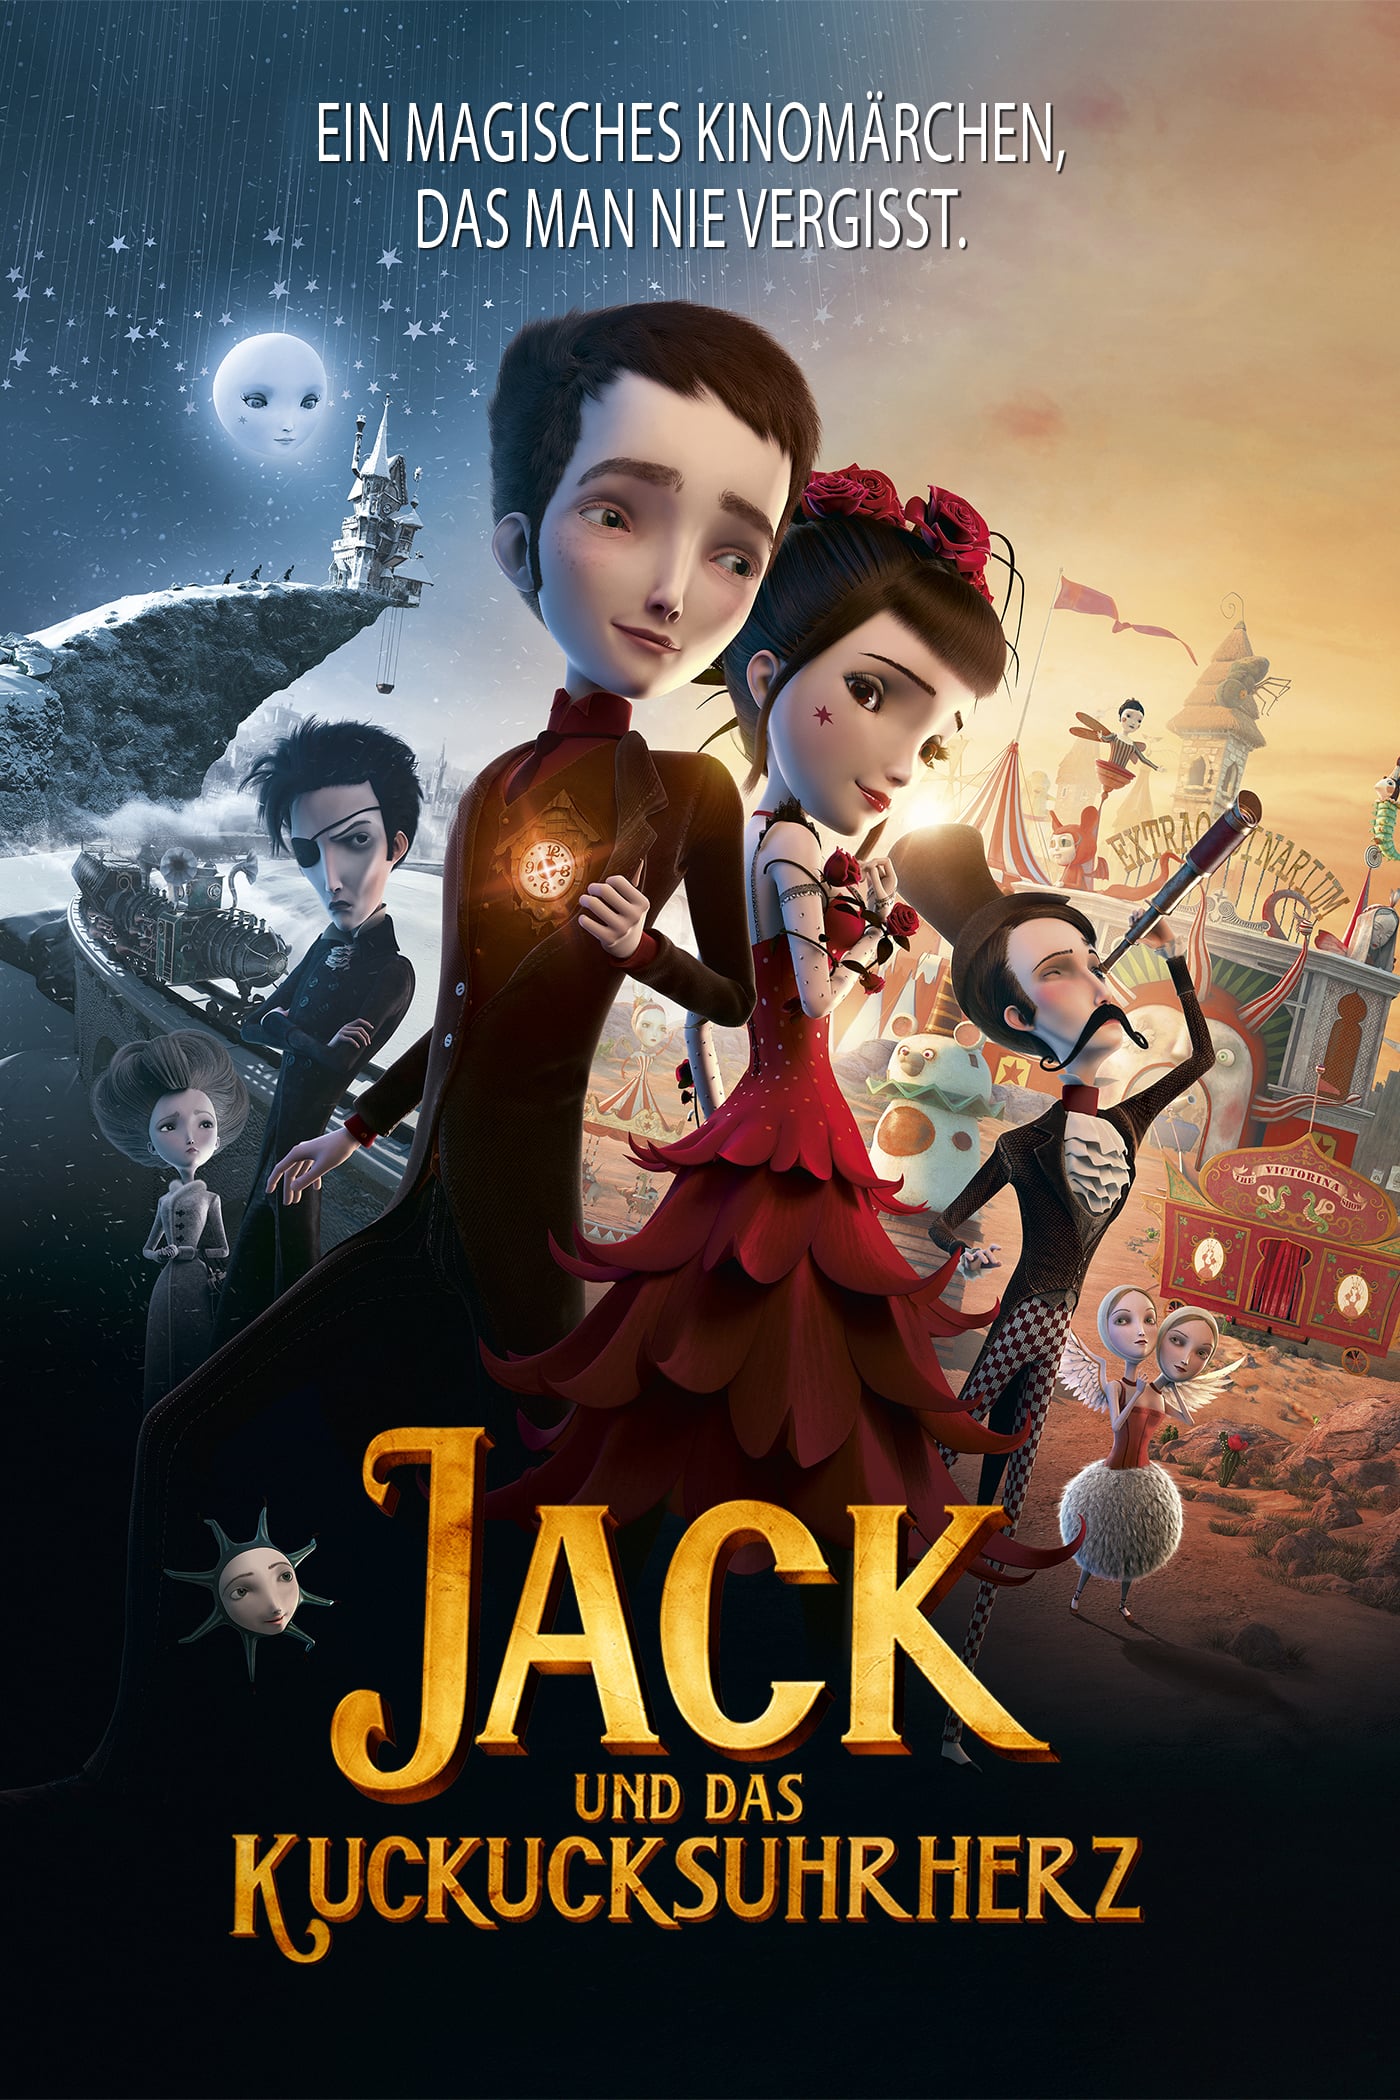 Plakat von "Jack und das Kuckucksuhrherz"